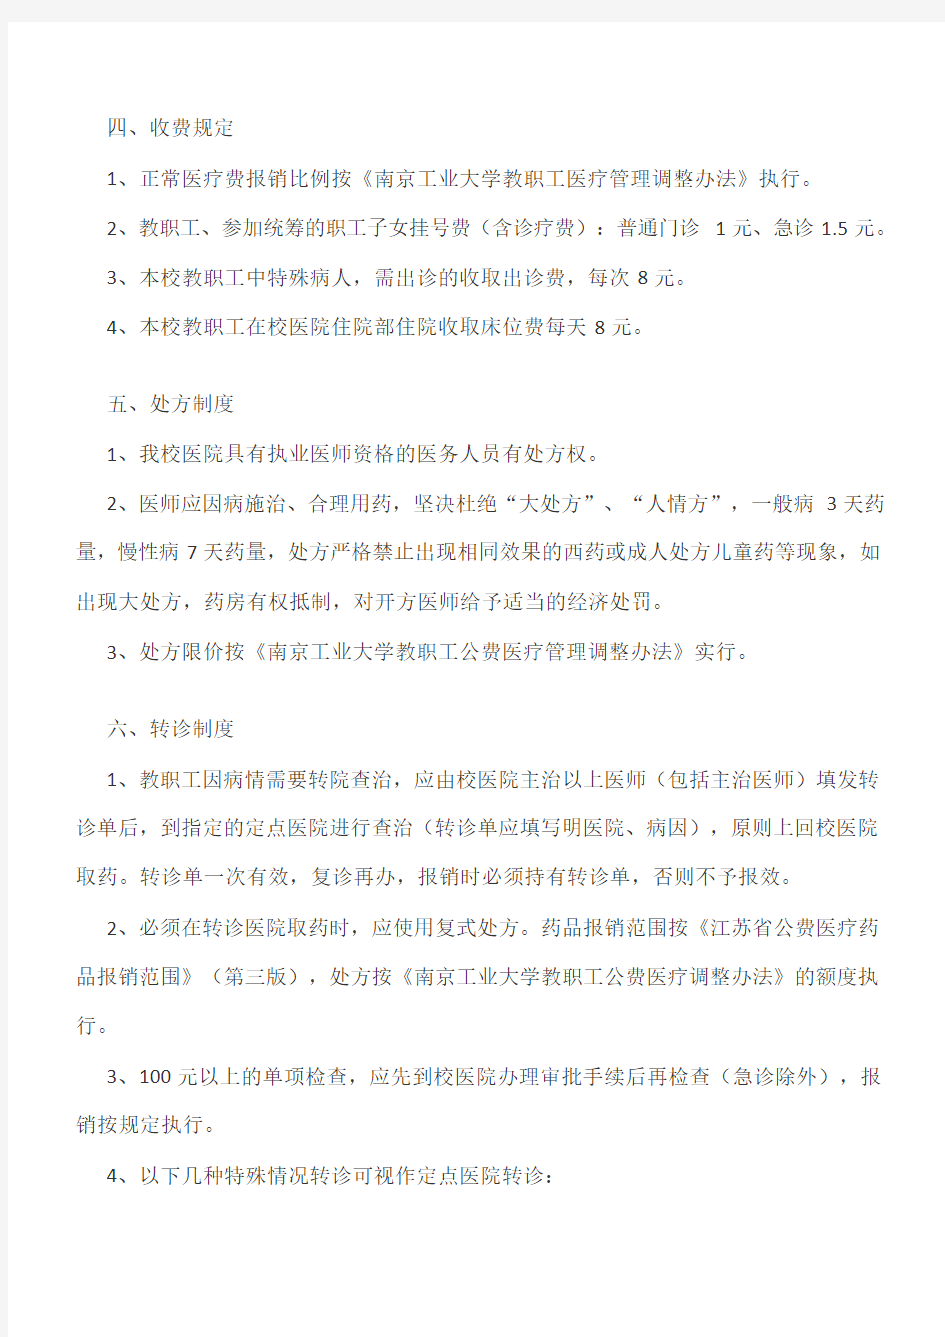 南京工业大学教职工公费医疗管理实施细则